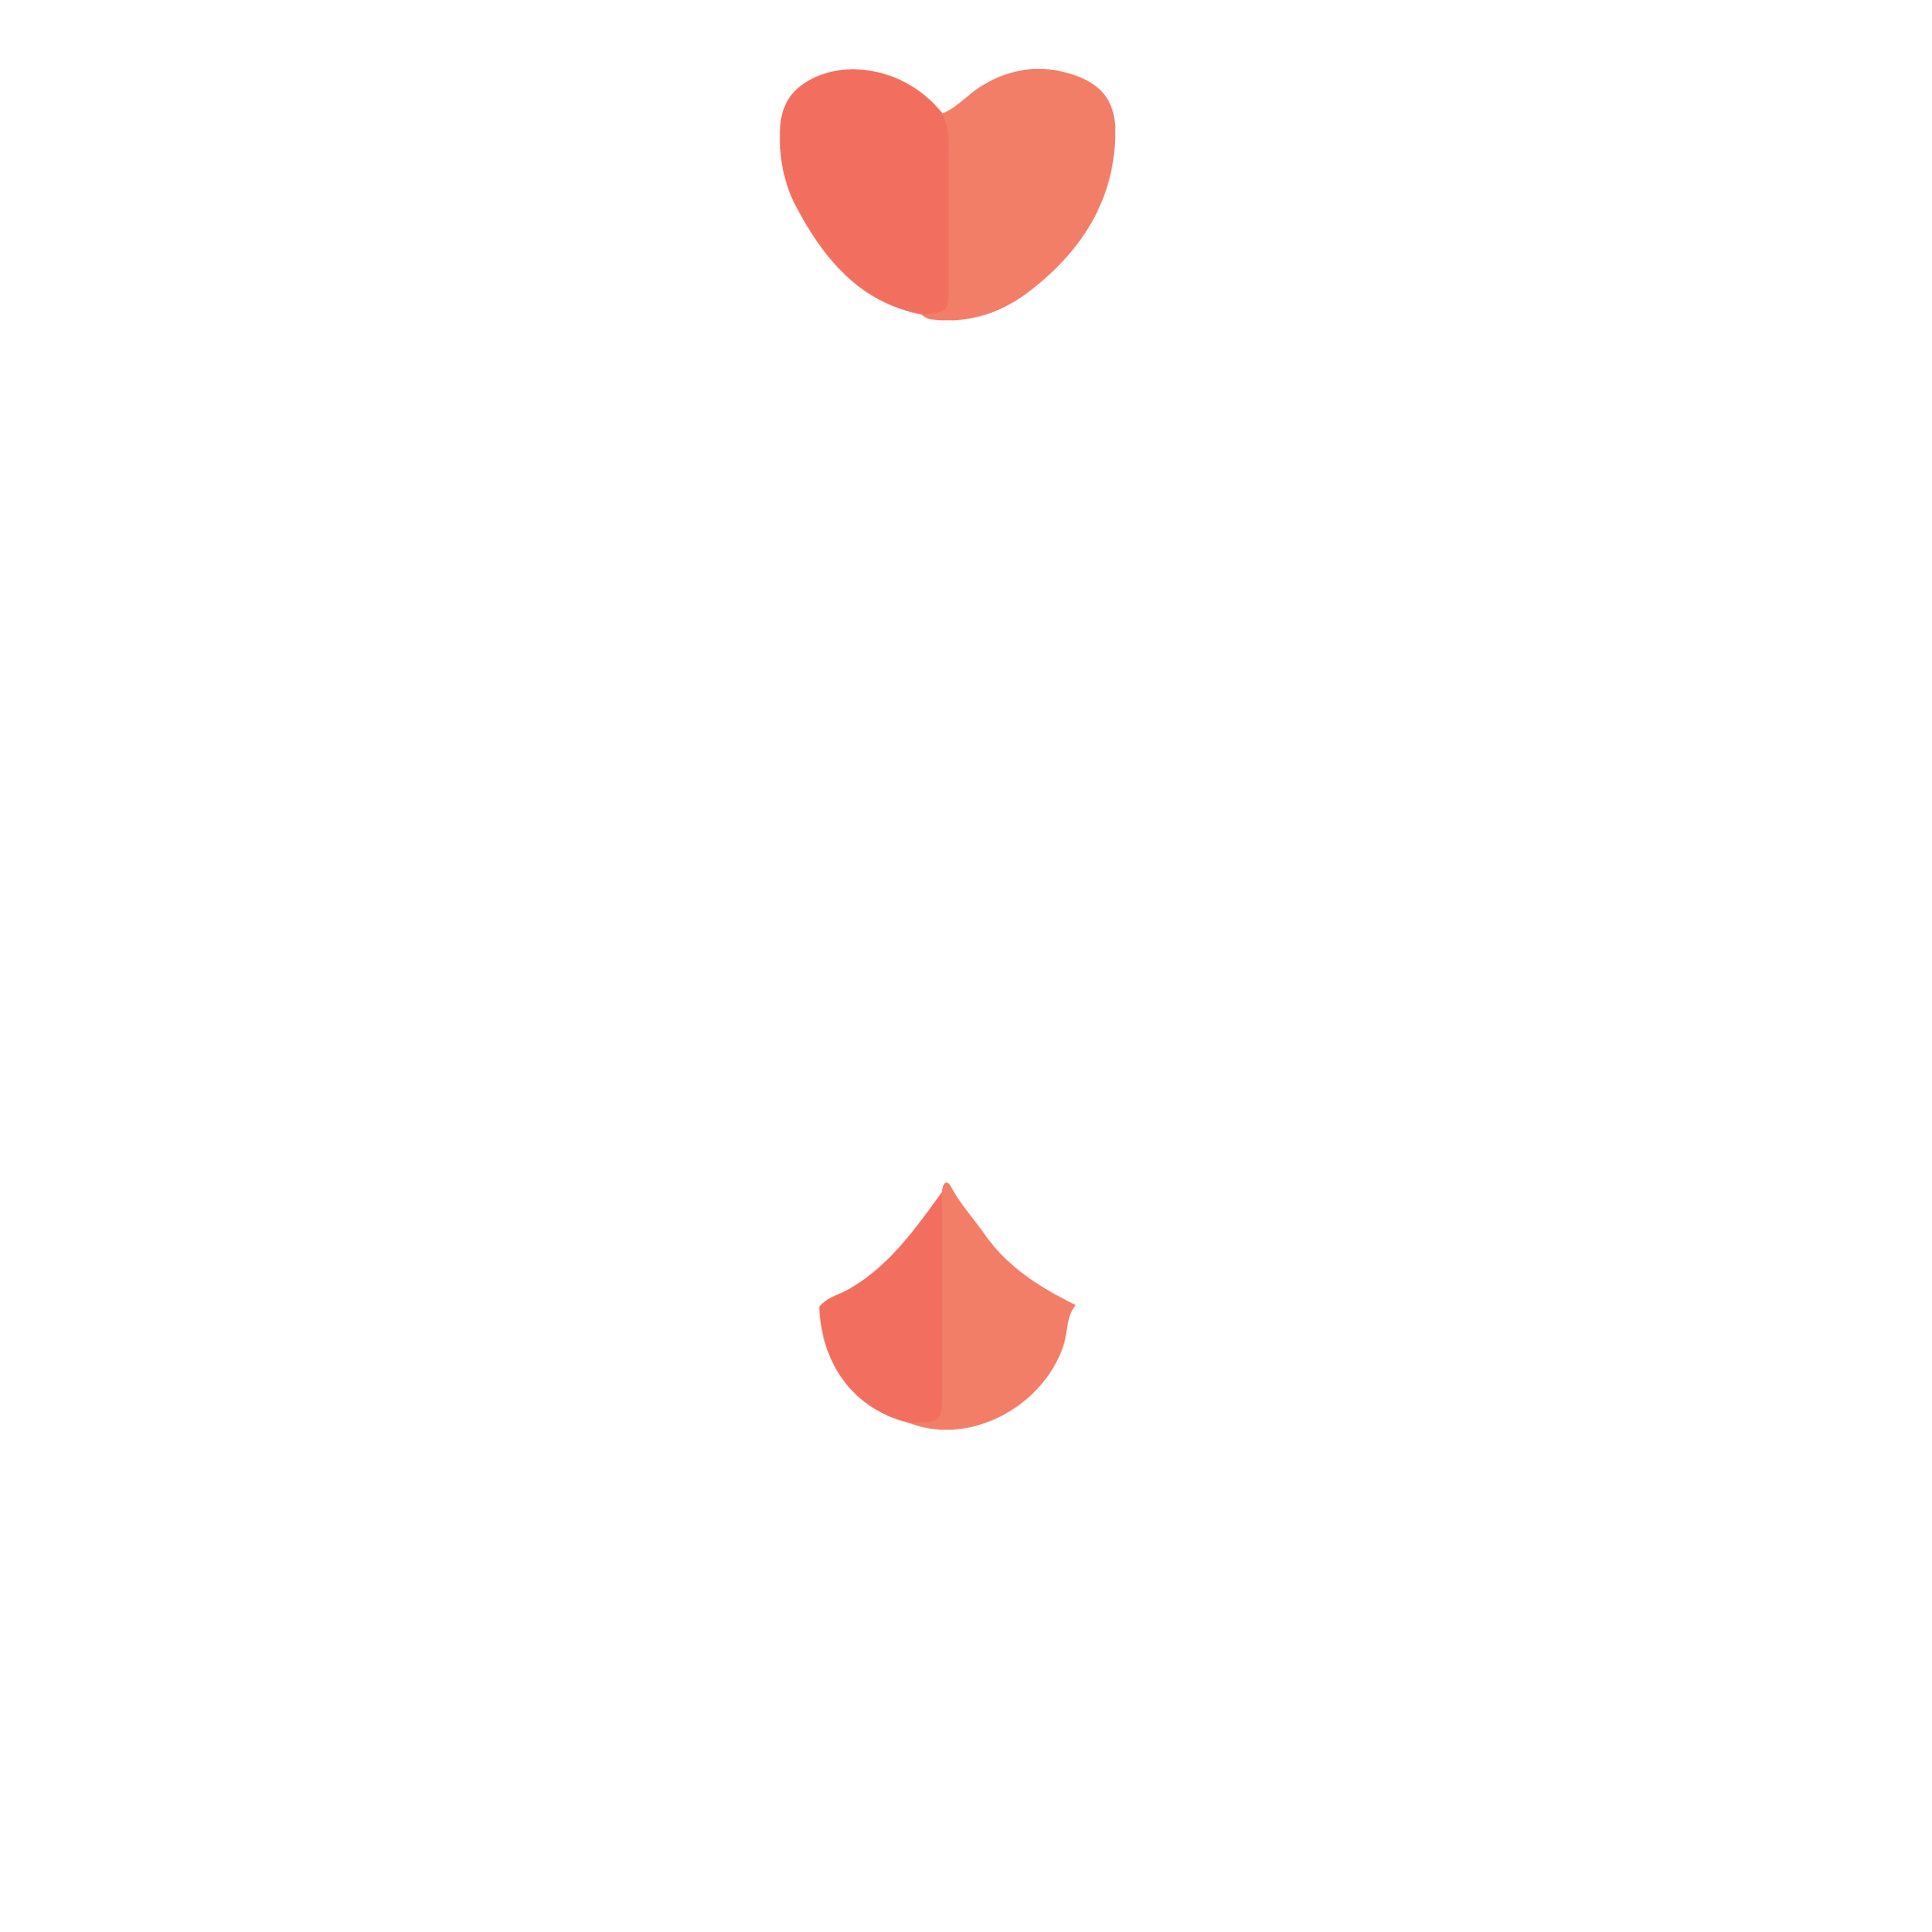 Cincinnati Animal CARE